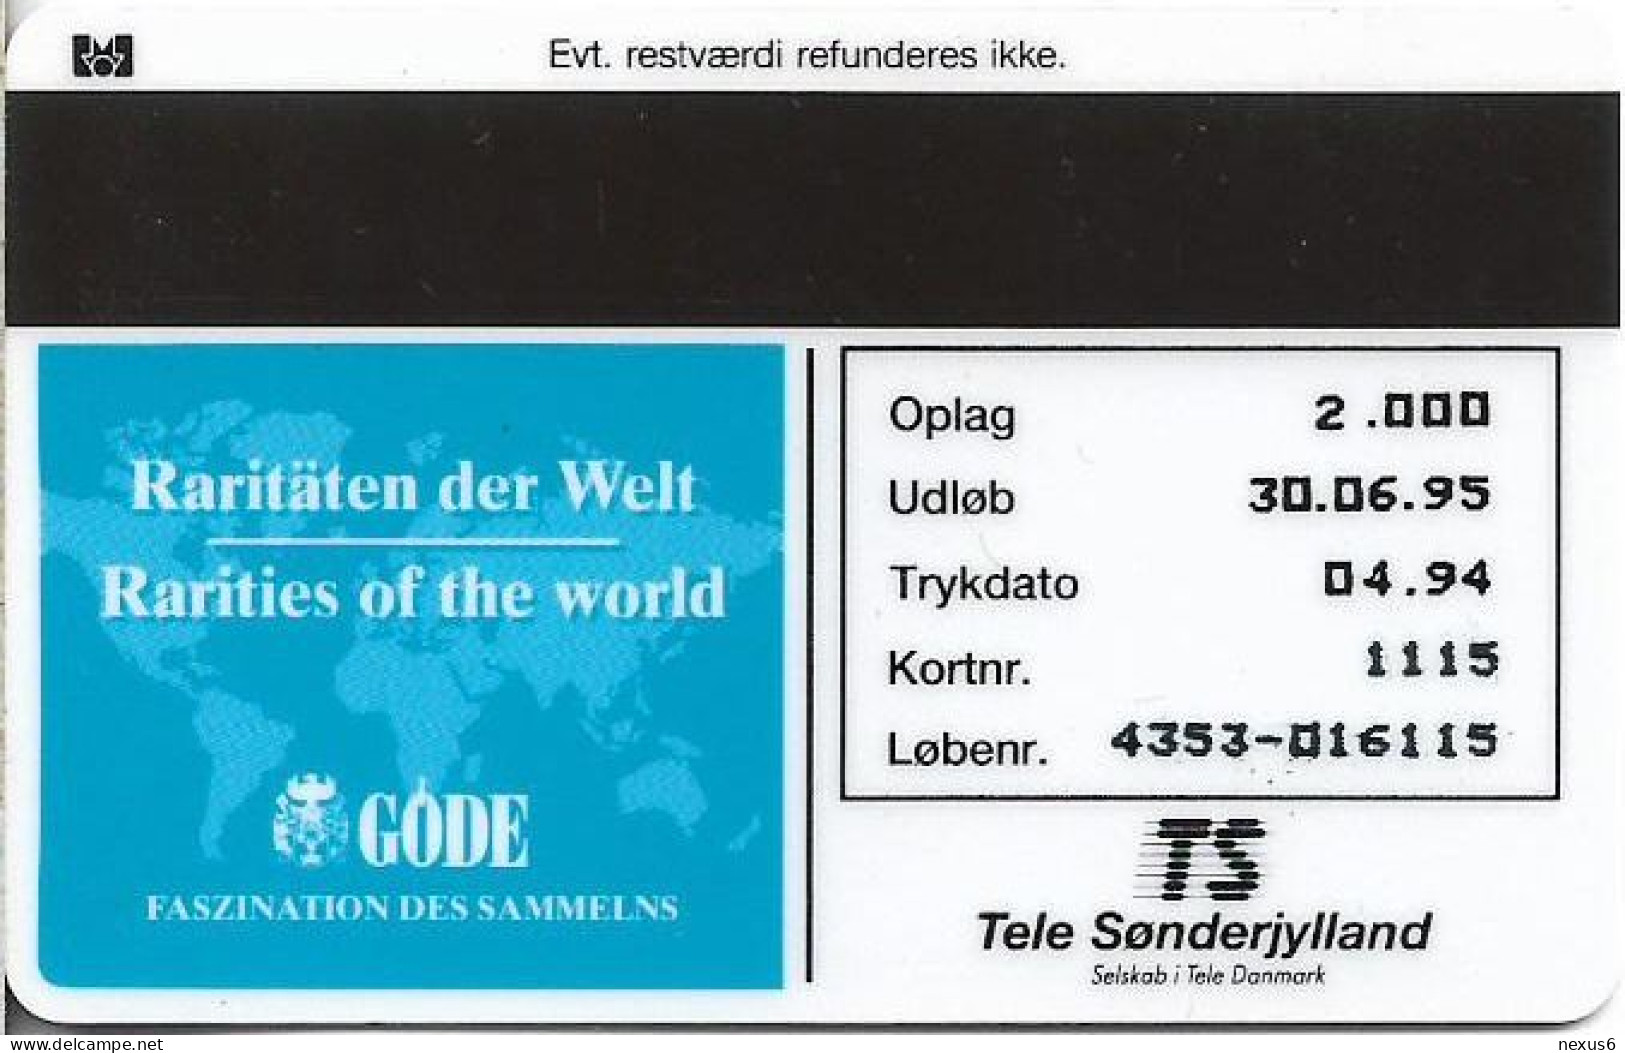 Denmark - TS - Rare Stamps - Merkur - TDTP044 - 04.1994, 5Kr, 2.000ex, Used - Danemark